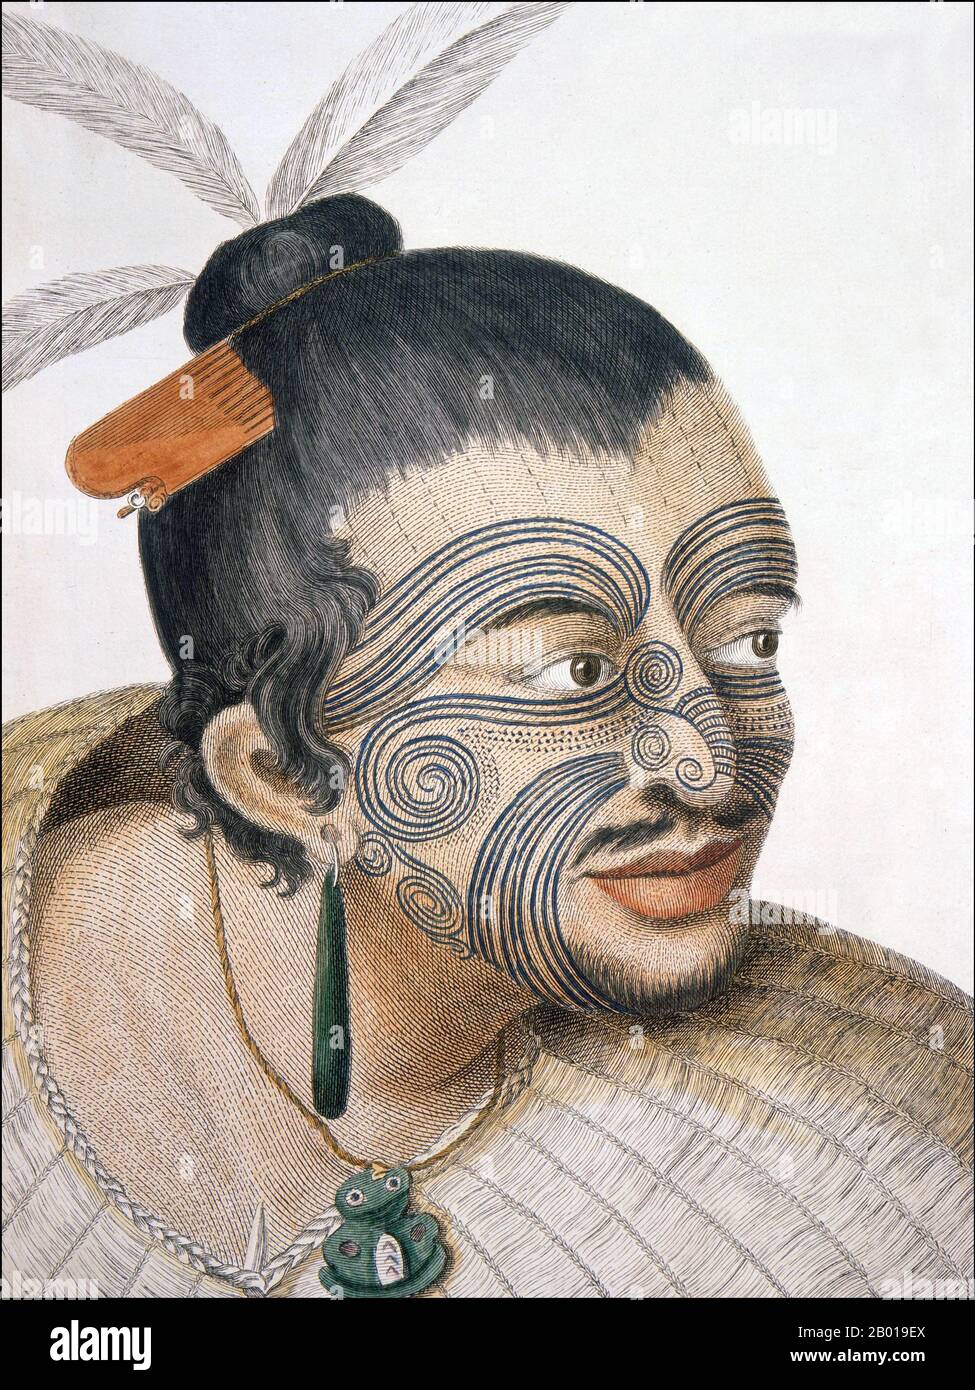 Nouvelle-Zélande : un chef maori avec tatouage de moko facial. Gravure par Thomas Chambers après Sydney Parkinson (1745 - 26 janvier 1771), 1769. Un portrait de la tête et des épaules d'un Māori, ses cheveux dans un nœud avec des plumes et un peigne osseux, un moko facial complet, un anneau d'oreille en pierre verte, un tiki et un manteau de lin. Il a une petite barbe et une moustache. Sydney Parkinson a été l'artiste lors du premier voyage du capitaine Cook en Nouvelle-Zélande en 1769. Tā moko est l'organisme permanent et le visage marqué par Māori, le peuple autochtone de Nouvelle-Zélande. Banque D'Images